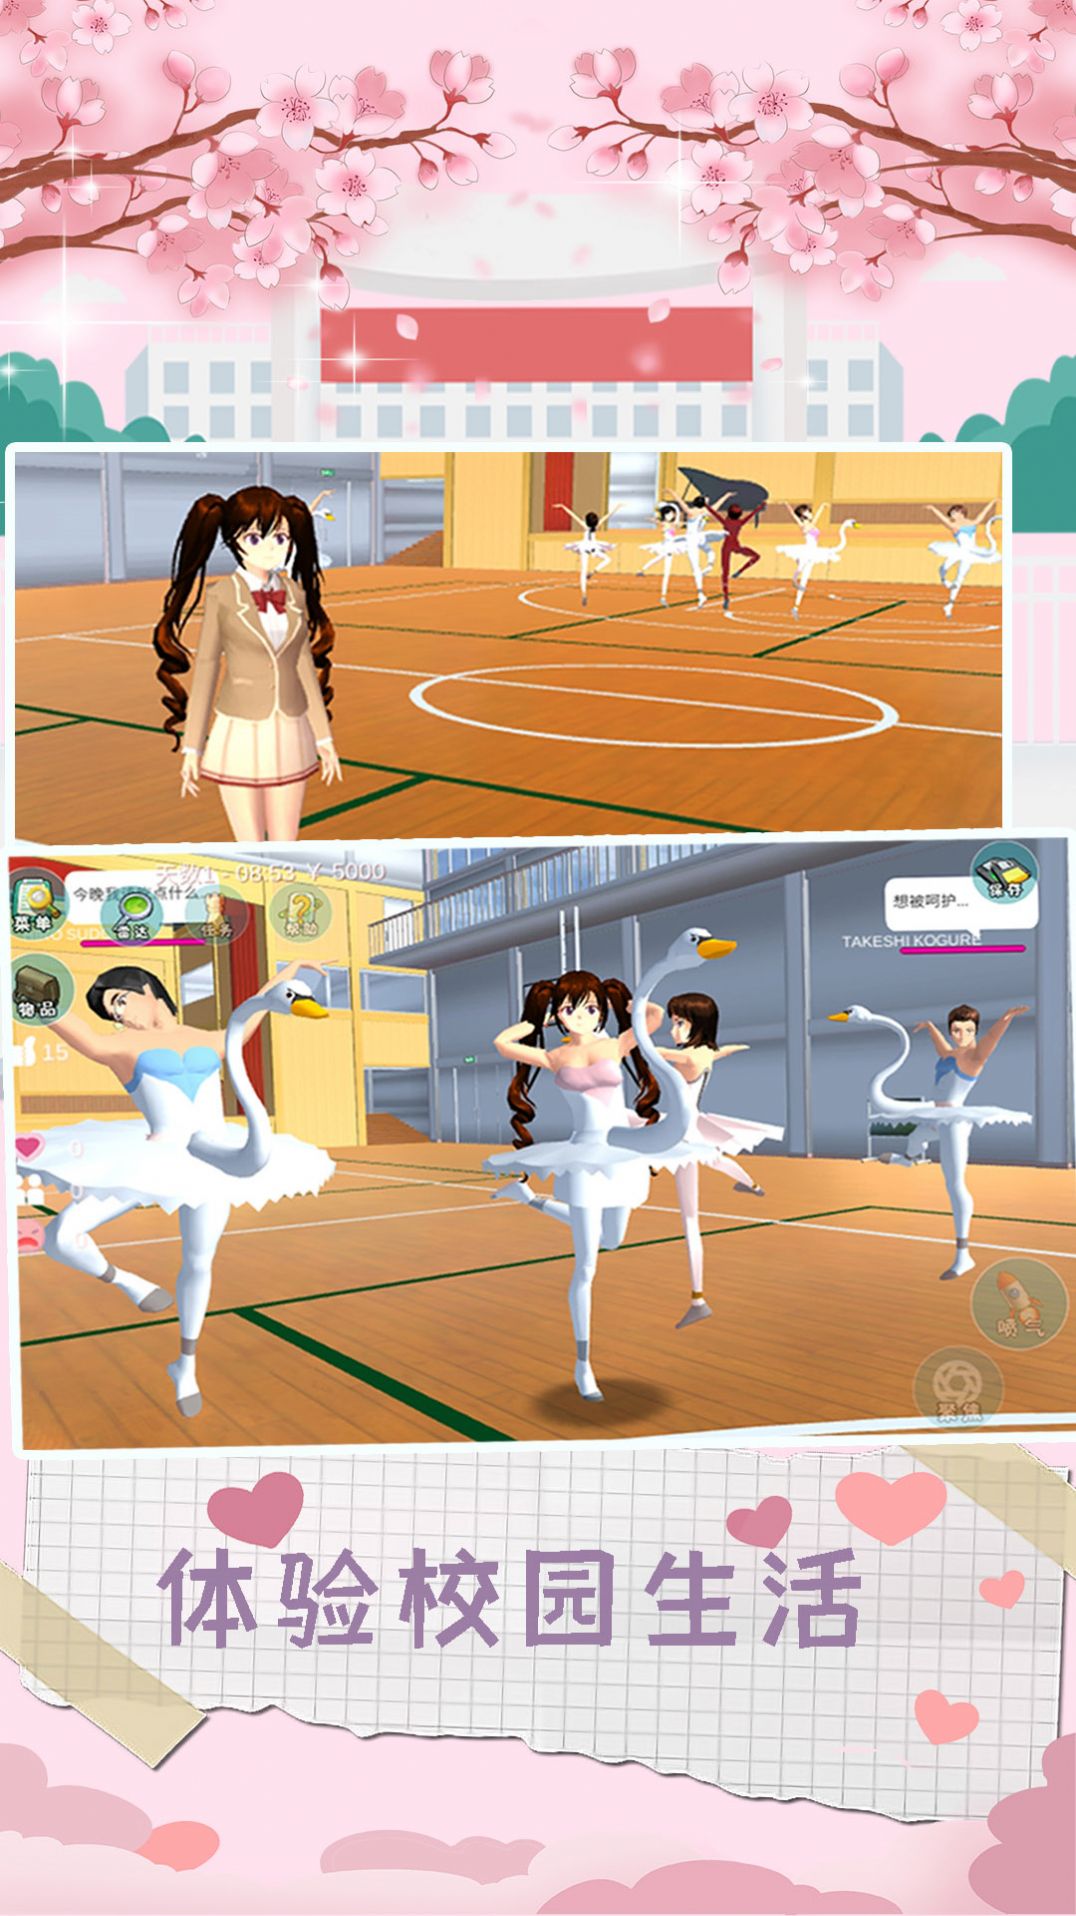 浪漫樱花物语游戏游戏下载-浪漫樱花物语游戏游戏手机版v2.0